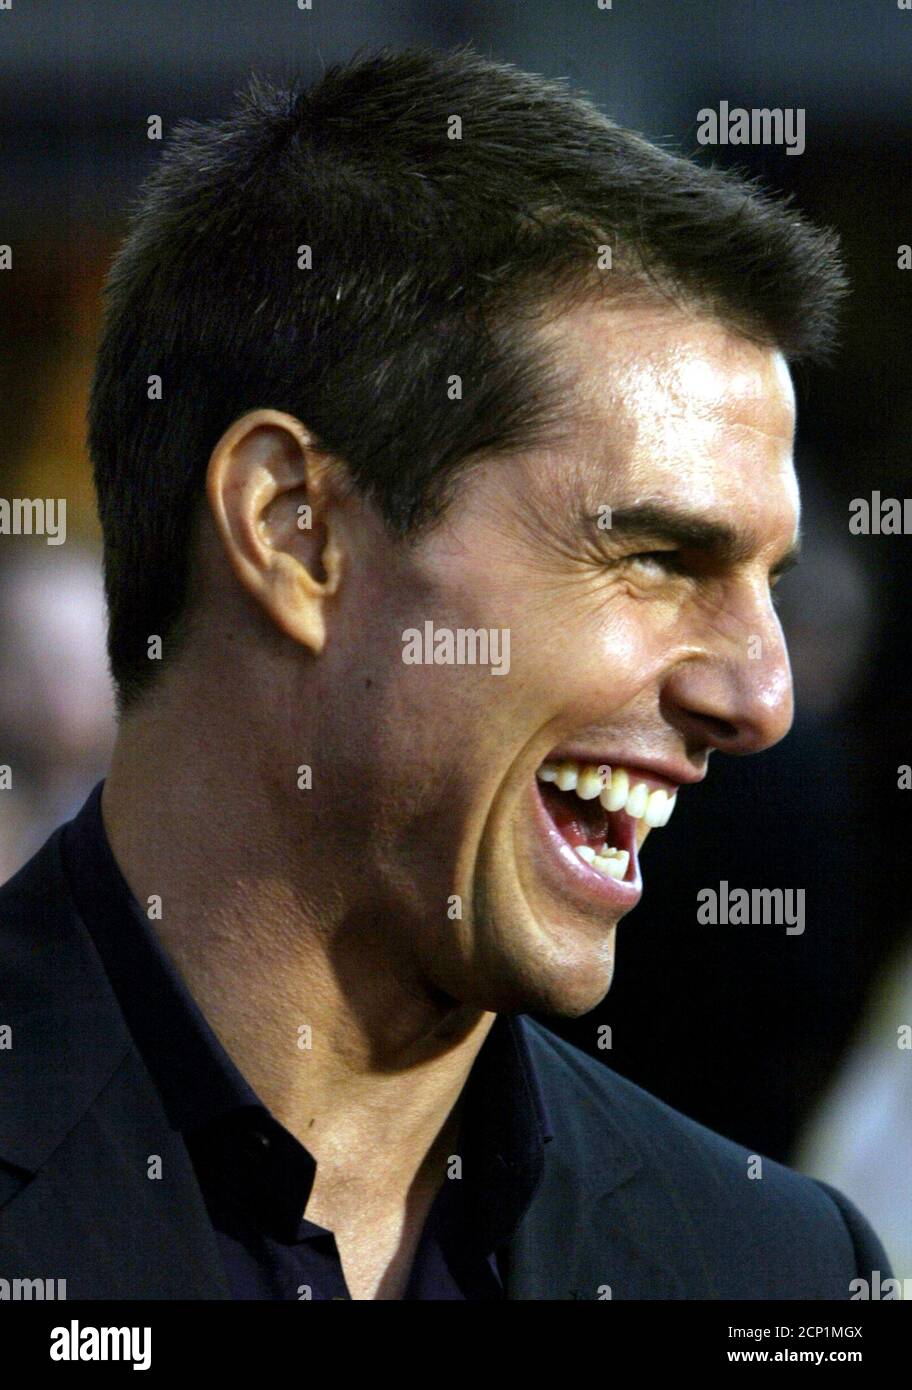 Schauspieler Tom Cruise, Star der neuen Thriller Film "Collateral" posiert  für Fotografen, als er bei der Premiere des Films in Los Angeles 2. August  2004 ankommt. Der Film erzählt die Geschichte von